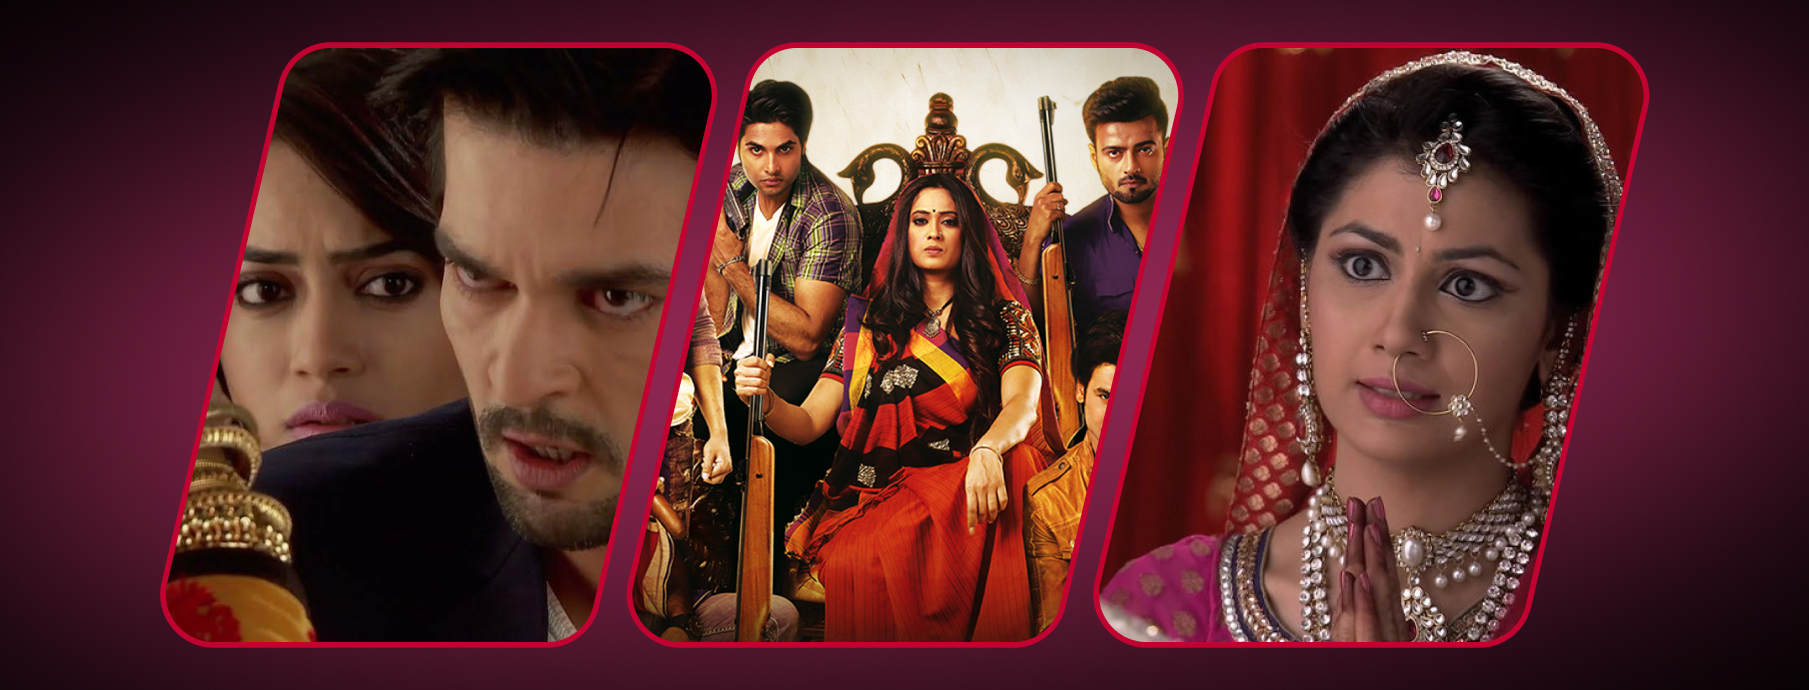 27 лучших индийских сериалов: кинокартины из Индии с высоким рейтингом|  Читайте на Эльдоблоге